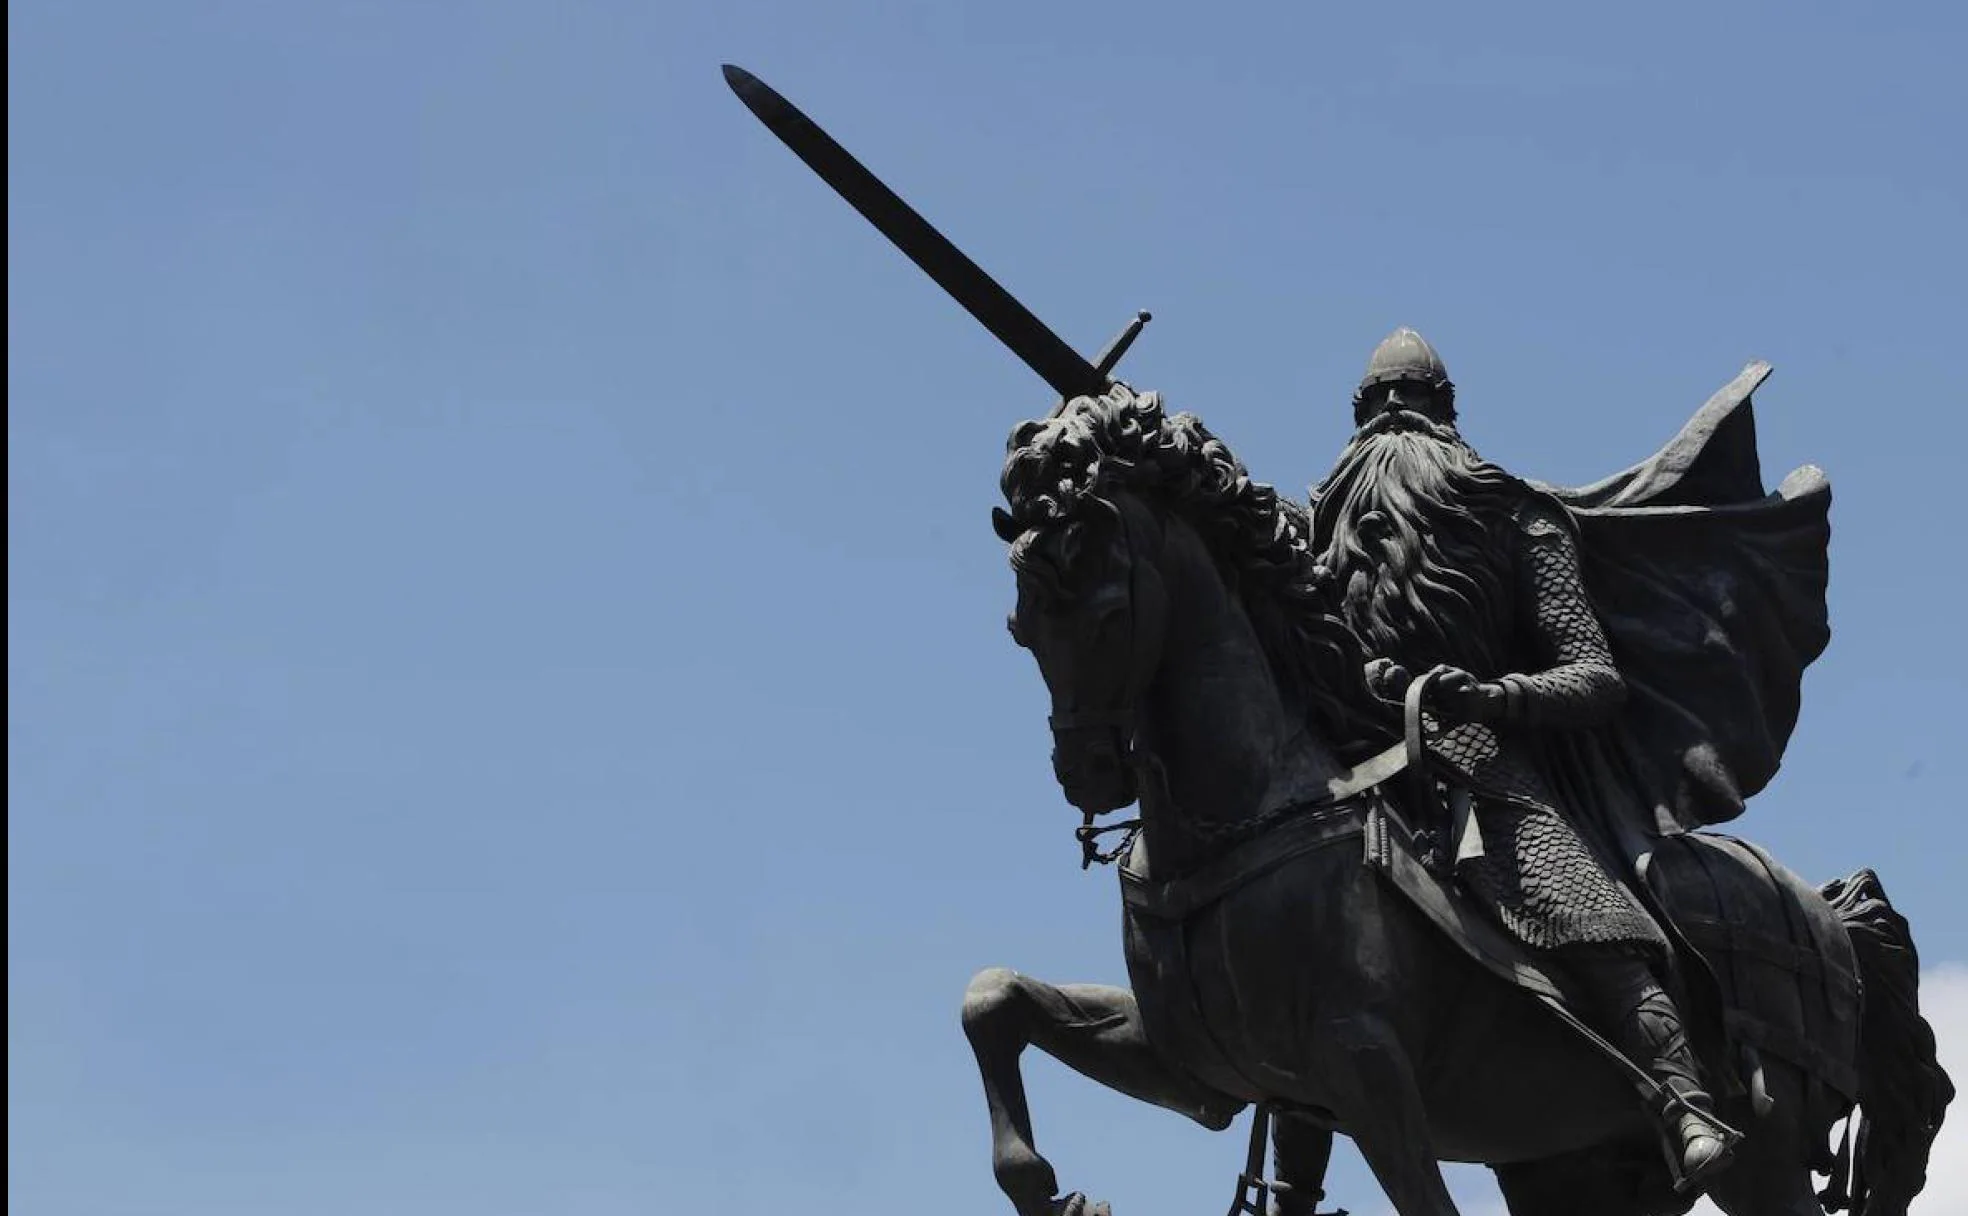 Diplomático Temprano Puerto El Cid cabalga de nuevo | Diario Sur